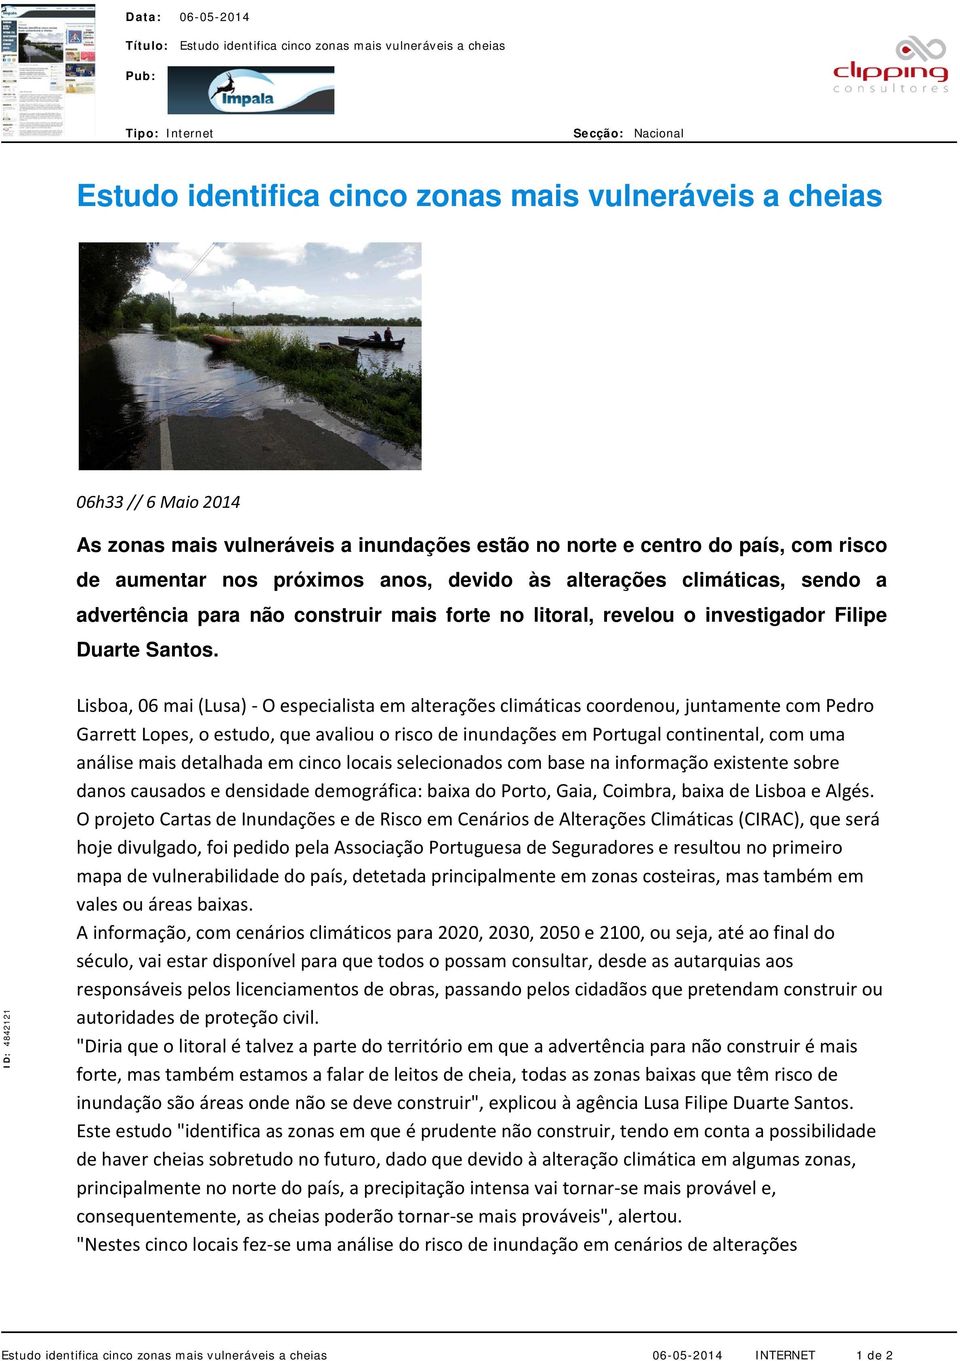 ID: 4842121 Lisboa, 06 mai (Lusa) - O especialista em alterações climáticas coordenou, juntamente com Pedro Garrett Lopes, o estudo, que avaliou o risco de inundações em Portugal continental, com uma